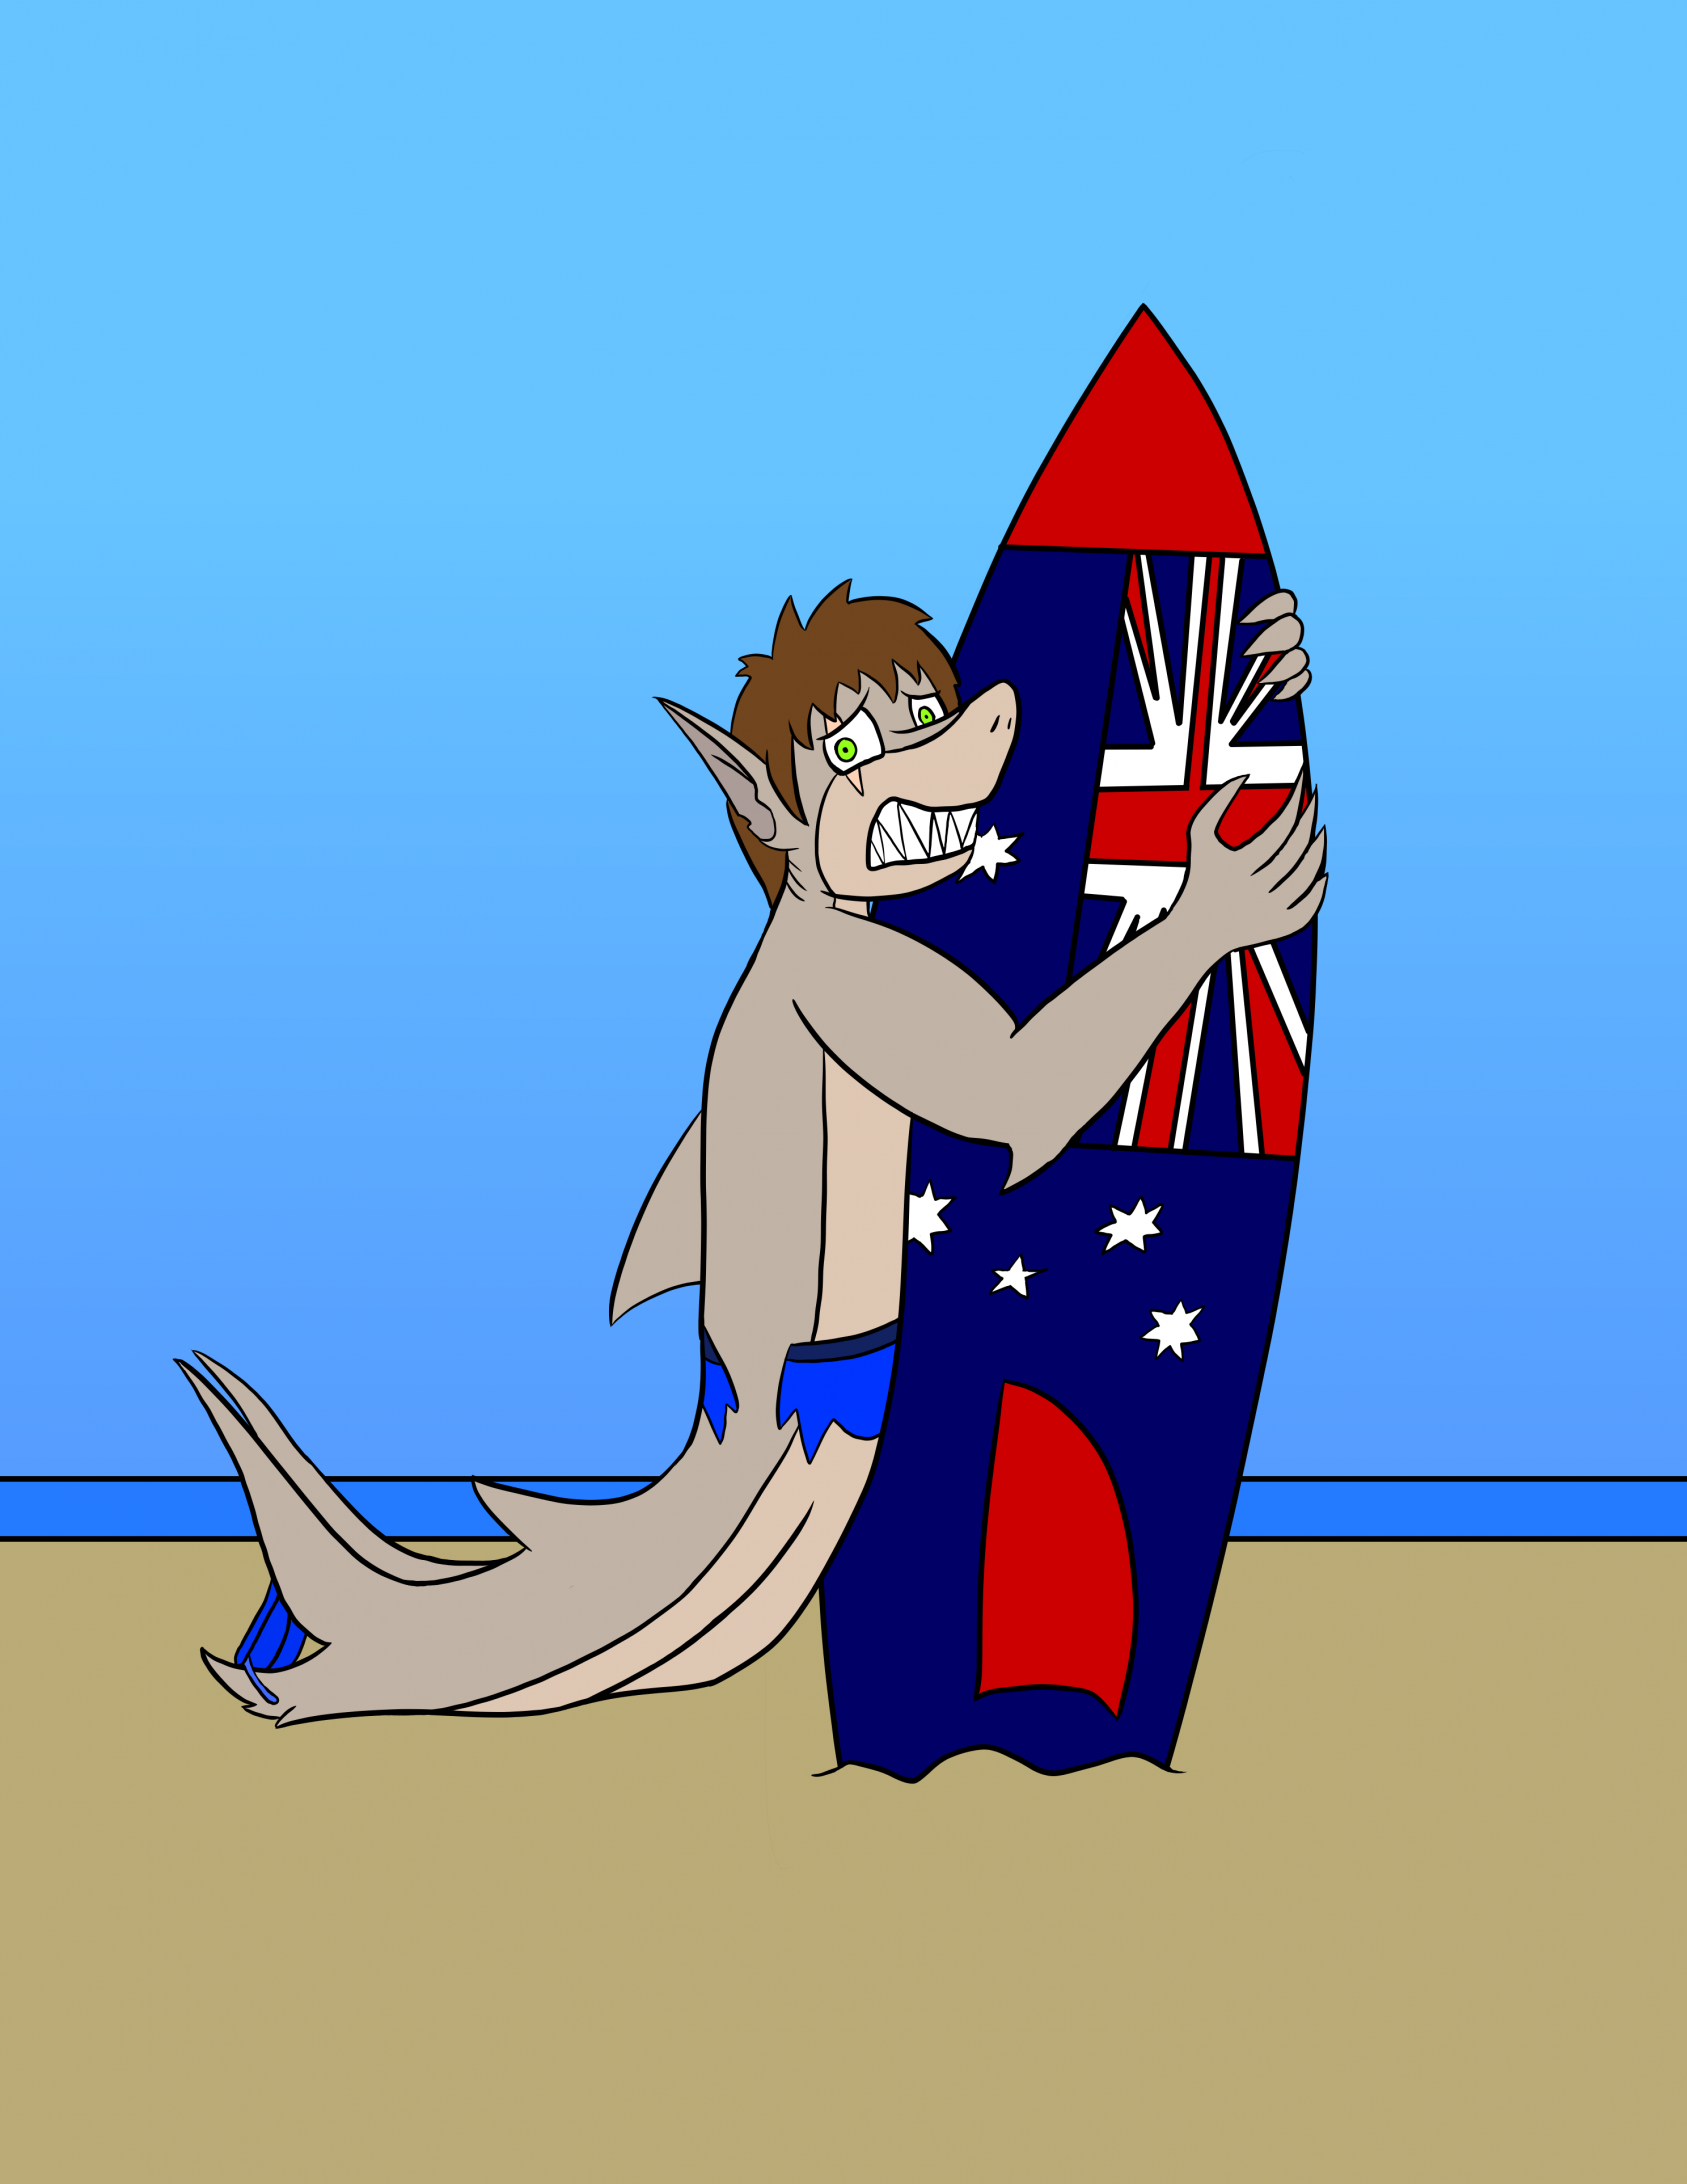 bull shark cartoon